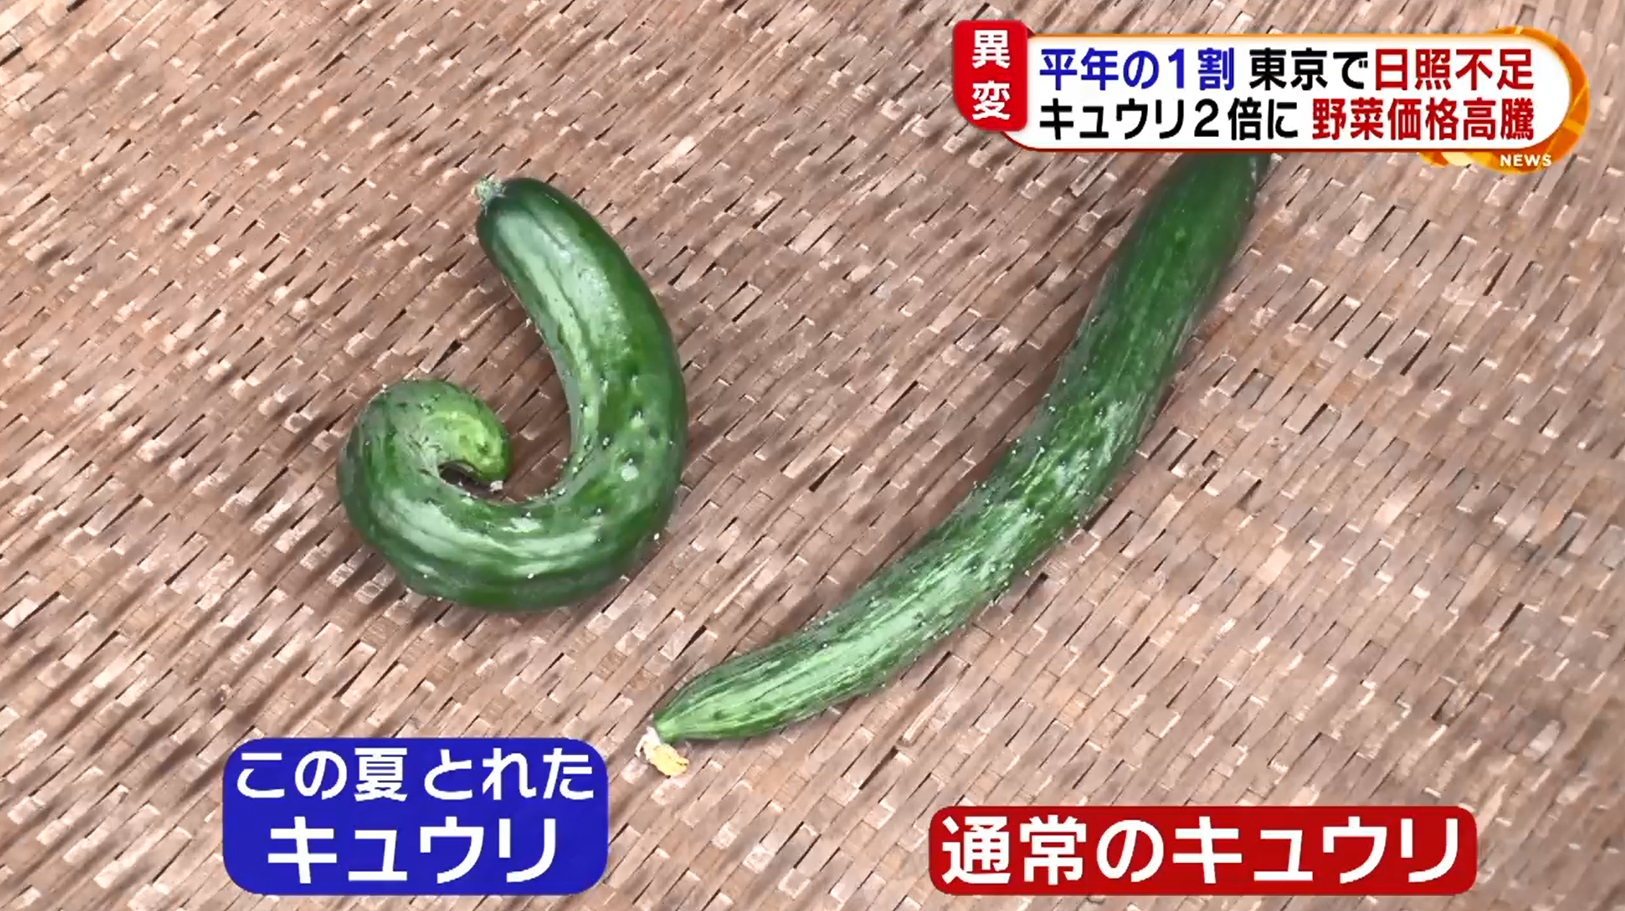 大田市場の野菜ニュース 0710 業務用野菜のベジクル